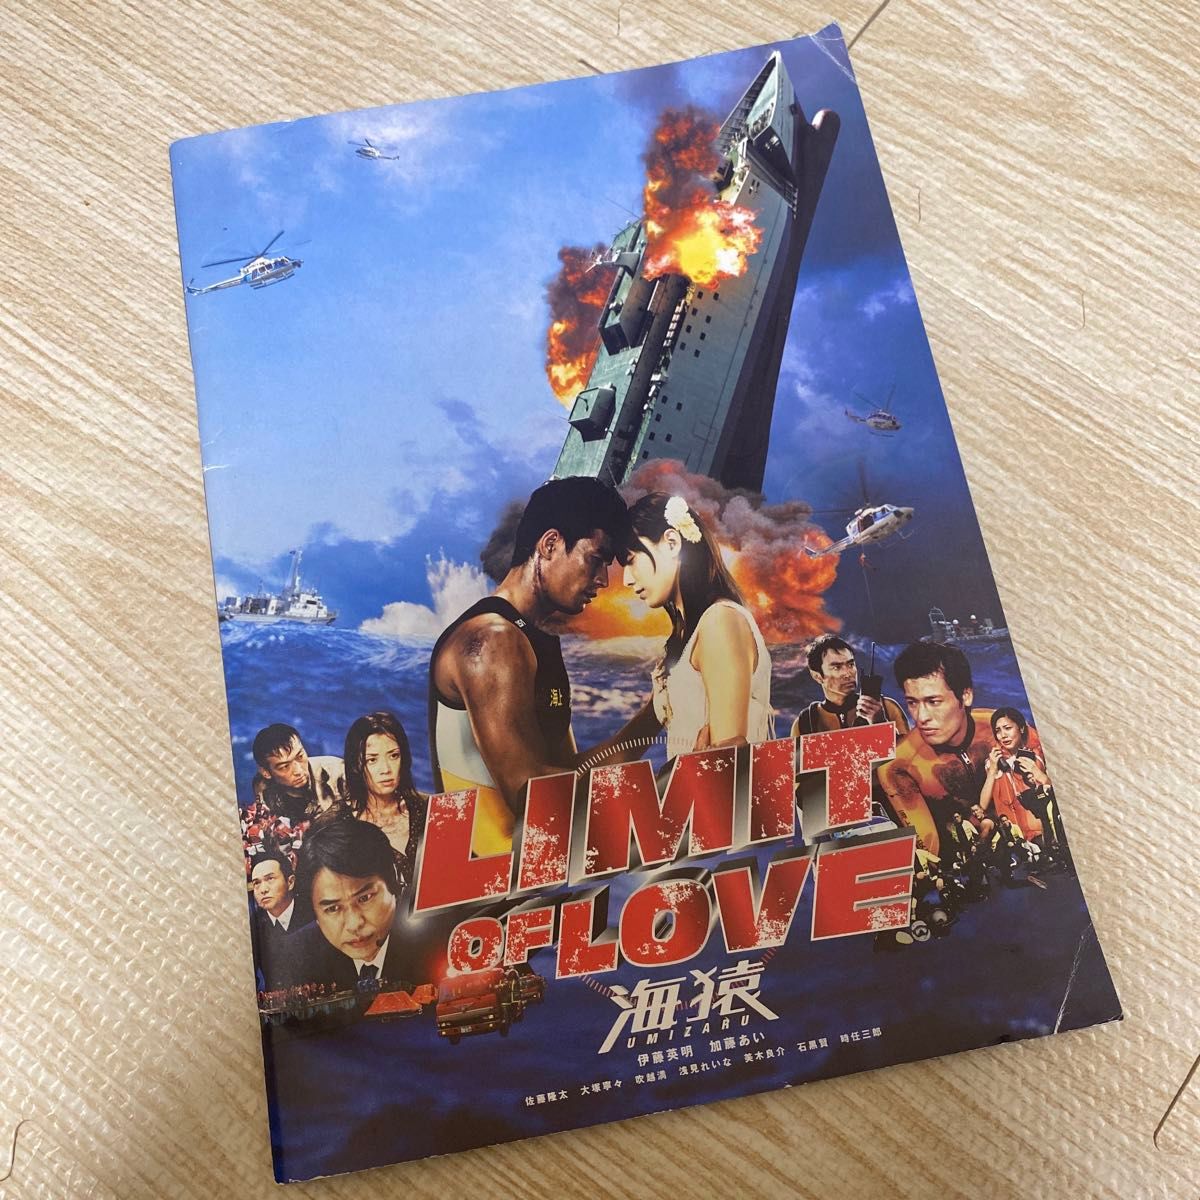 【映画】『LIMLT OF LOVE 海猿』 パンフレット